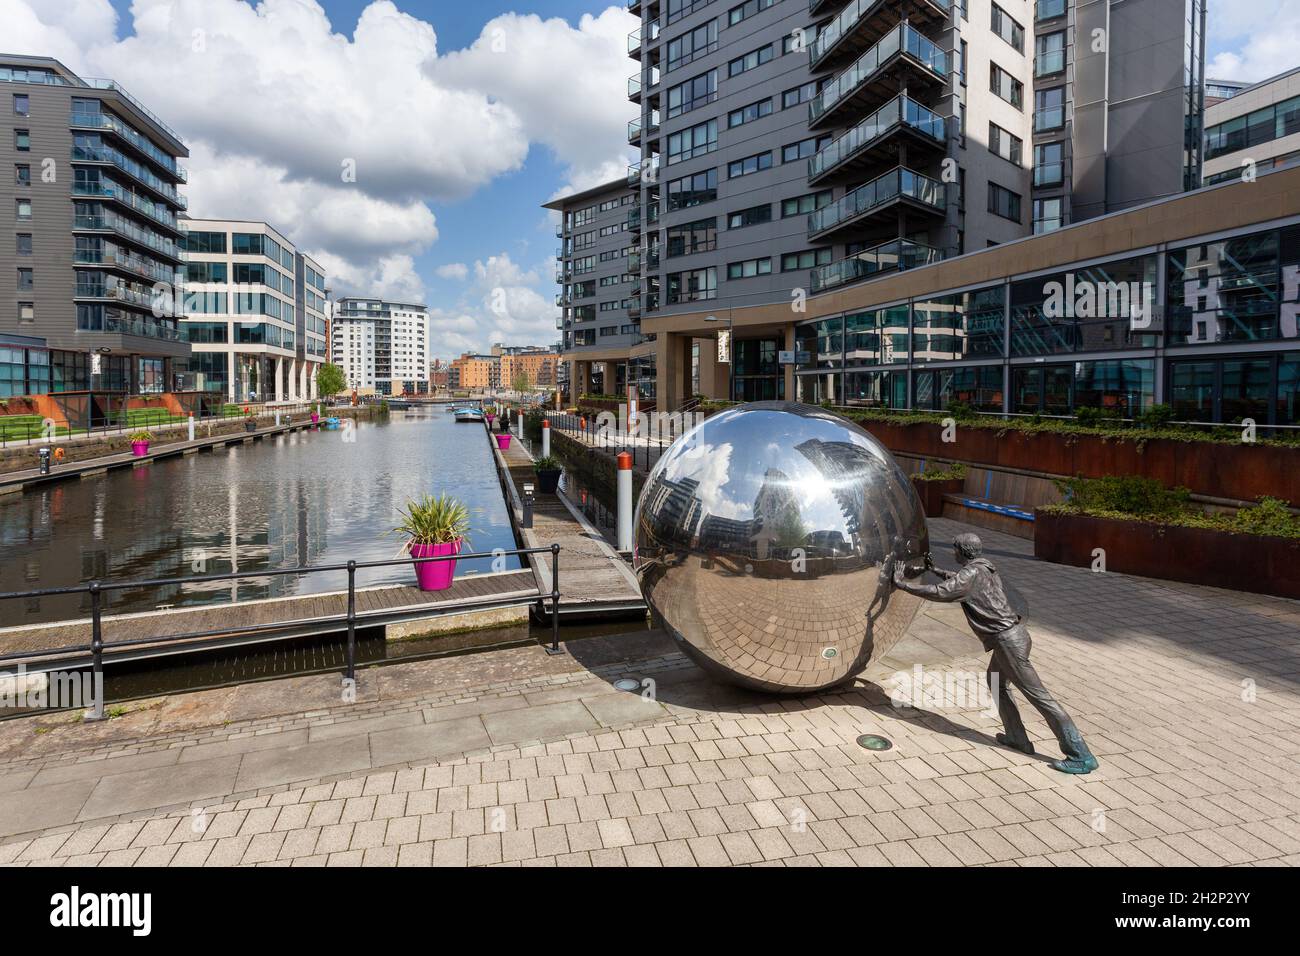 Un approccio riflessivo - scultura di un ragazzo che spinge una sfera riflettente al Clarence Dock, nel centro di Leeds Foto Stock